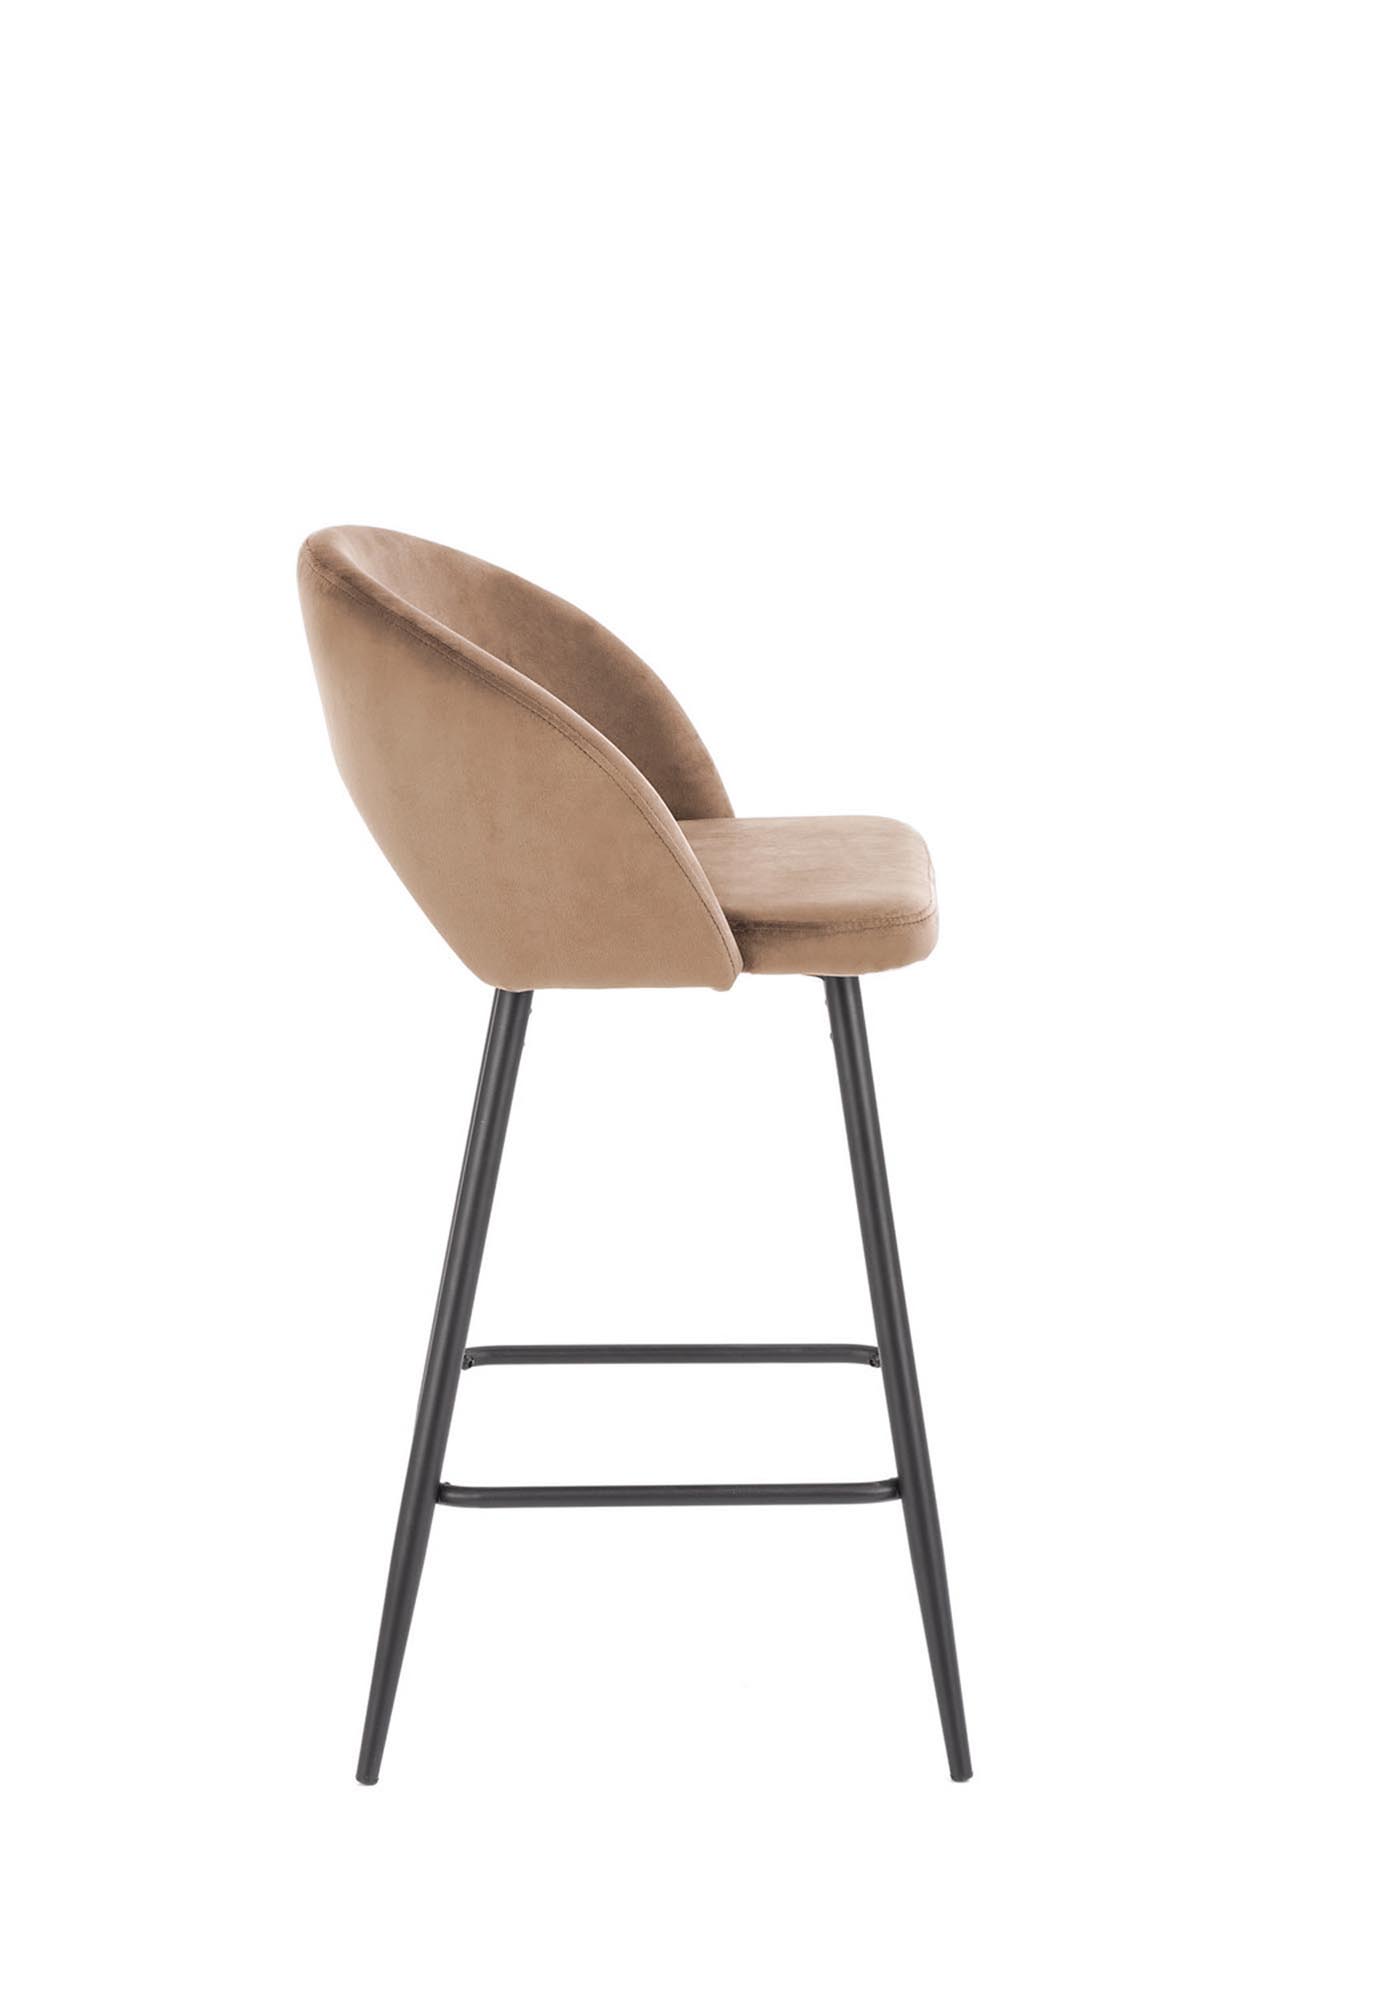 H96 Barová židle béžový (1p=1szt) Barová židle čalouněná h96 - Béžová